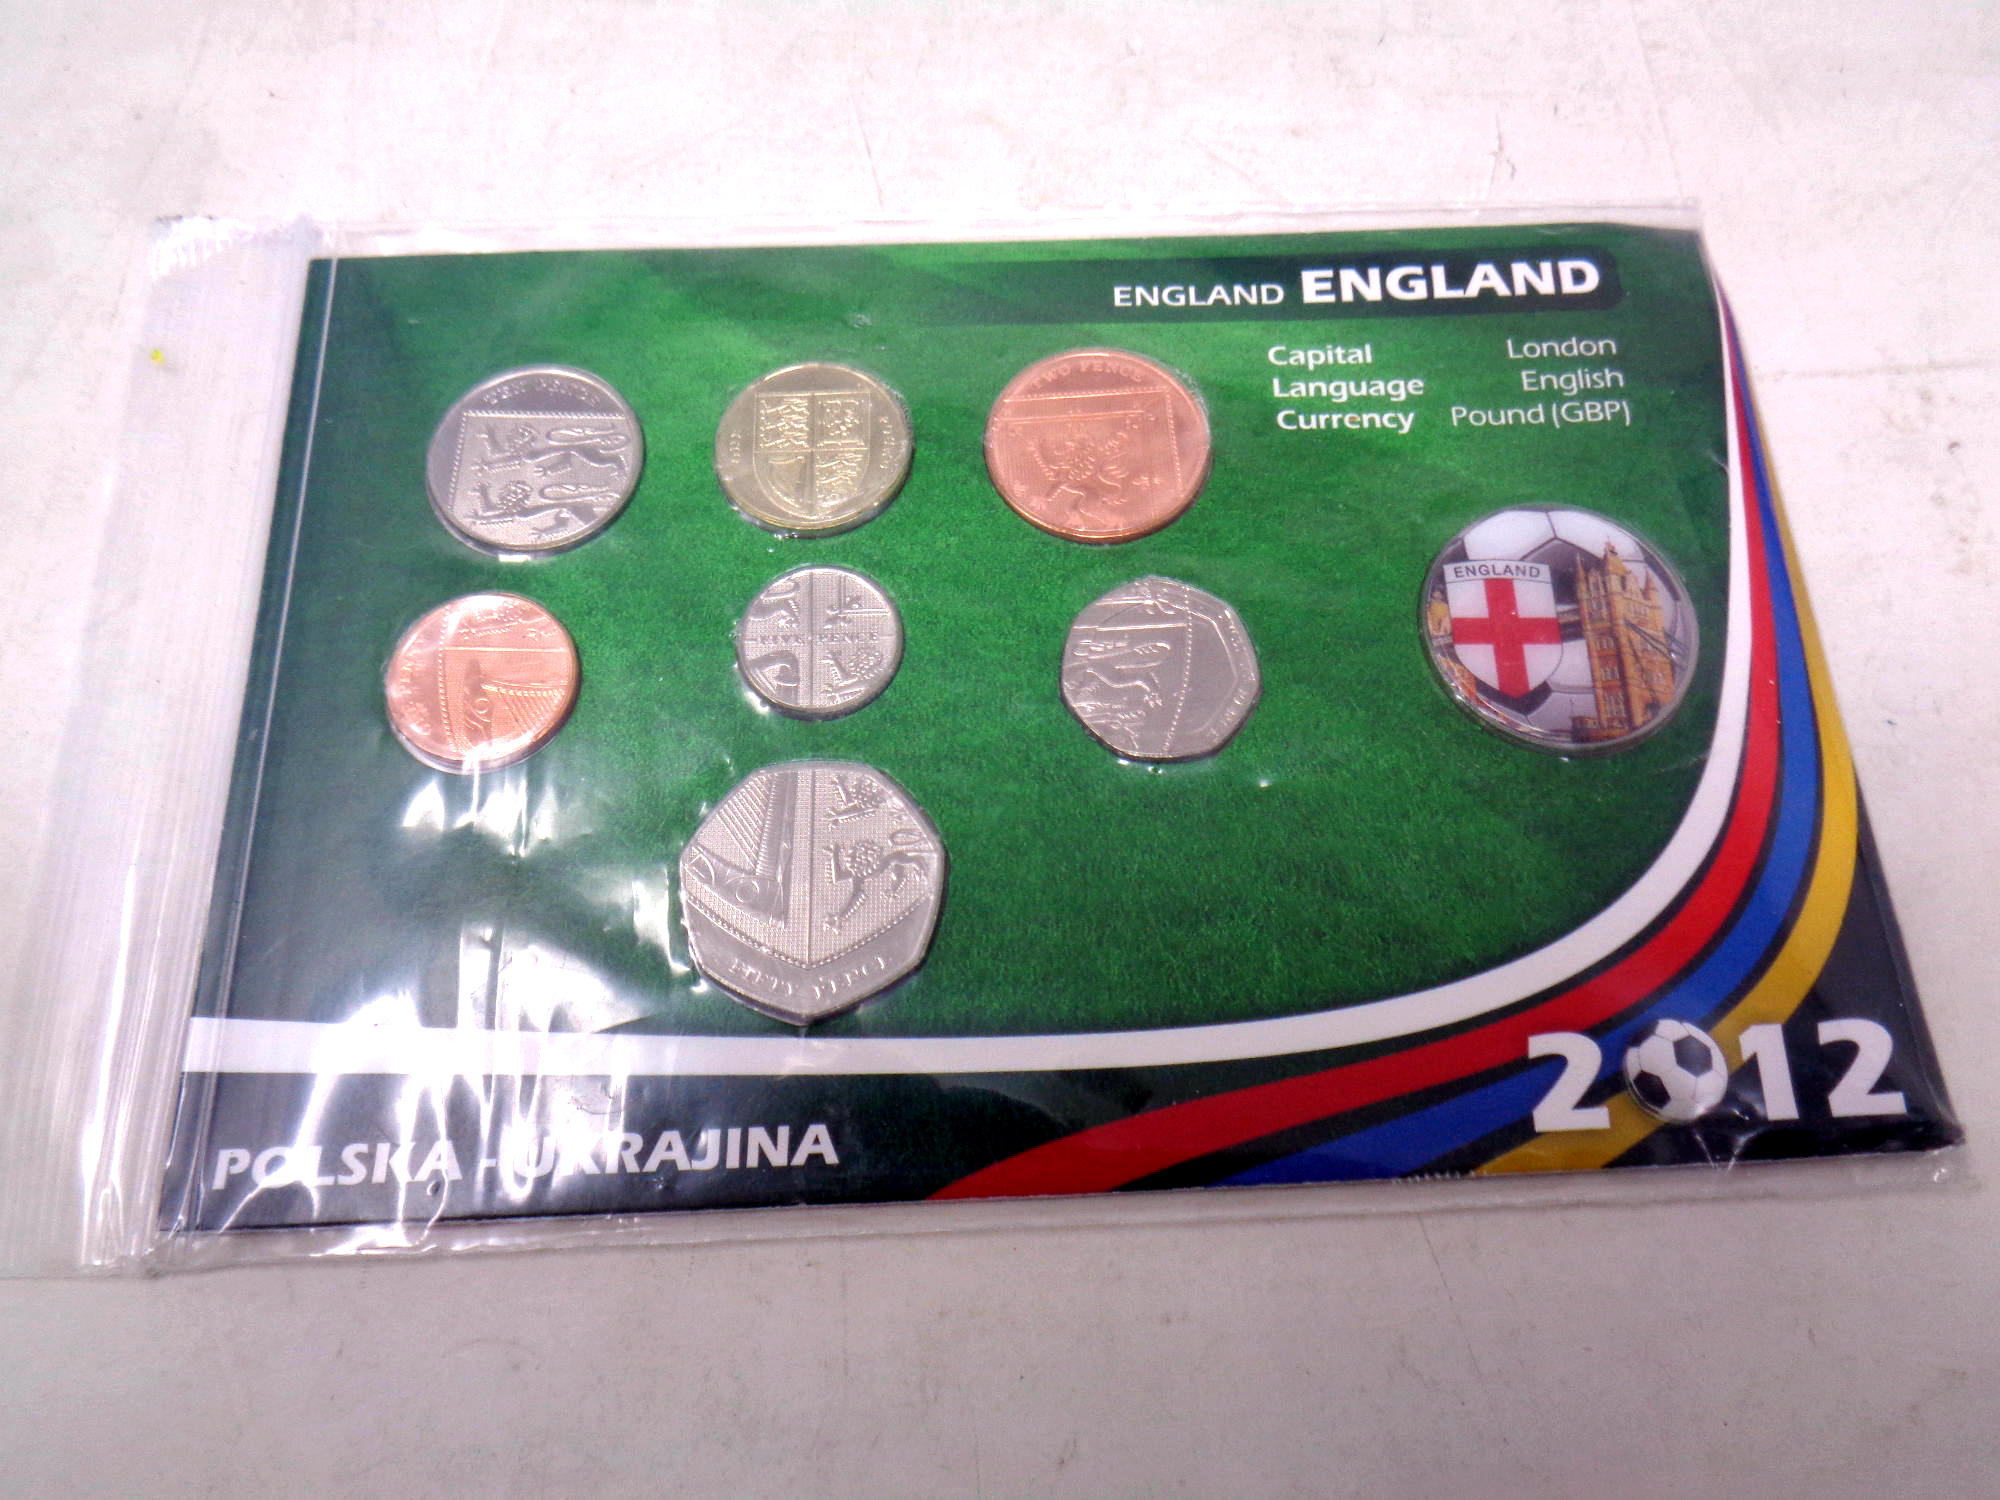 A 2012 Poland European championships England coin set